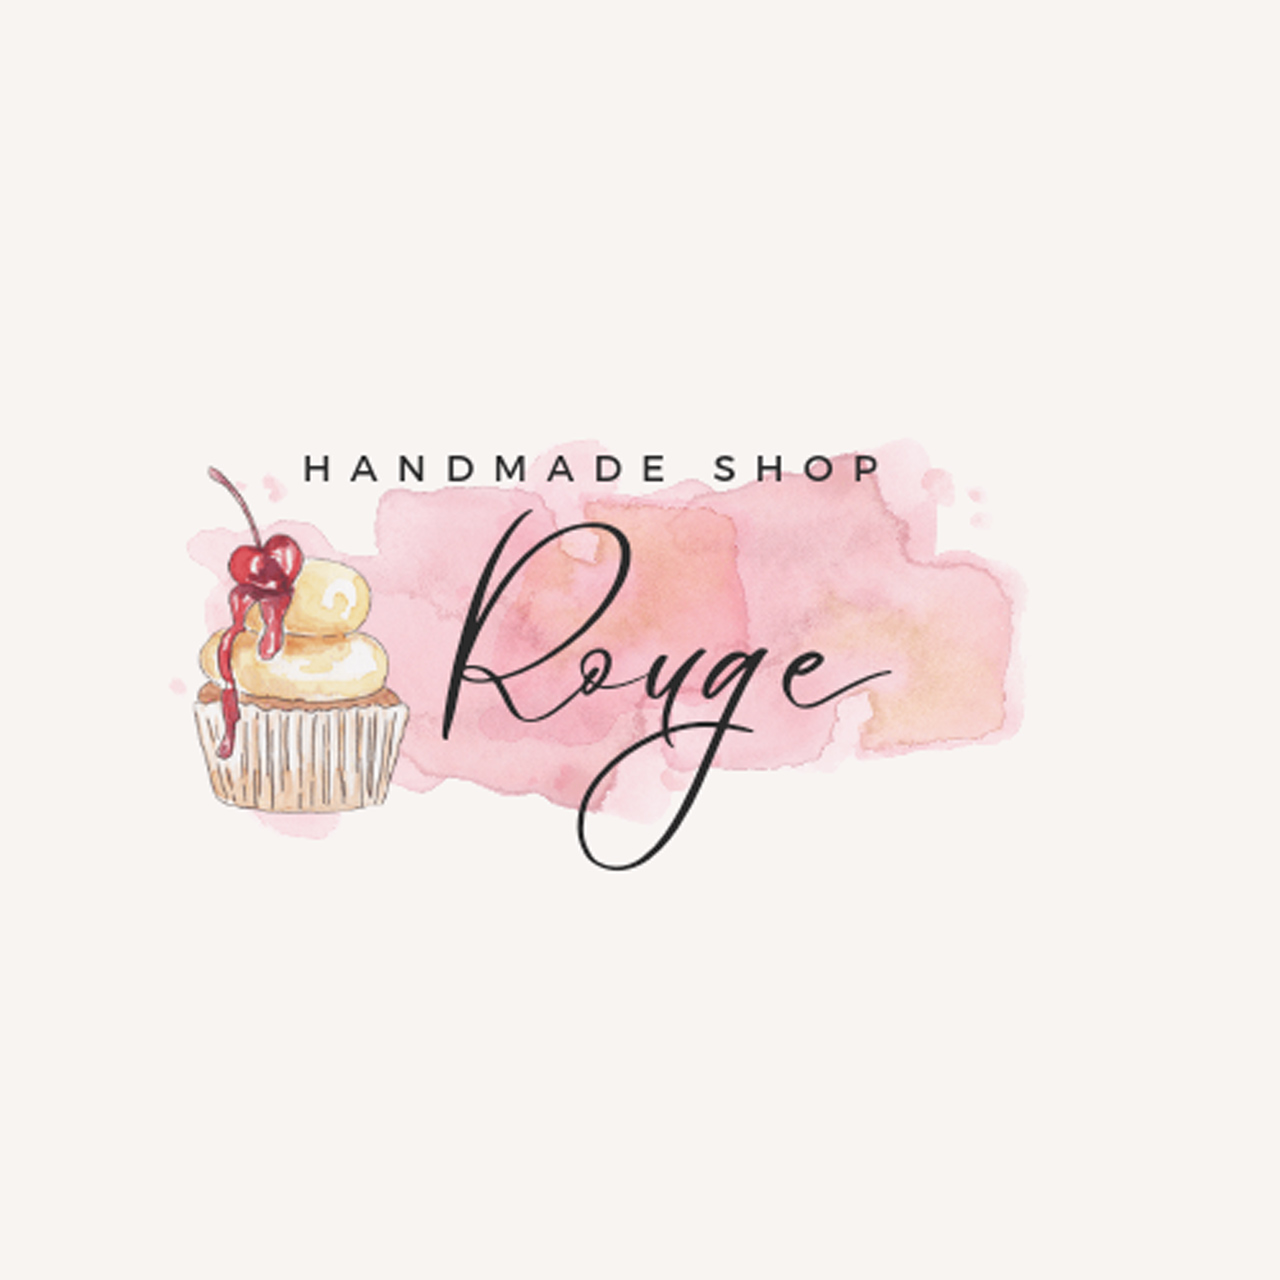 handmade shop Rouge - ハンドメイドショップ ルージュ